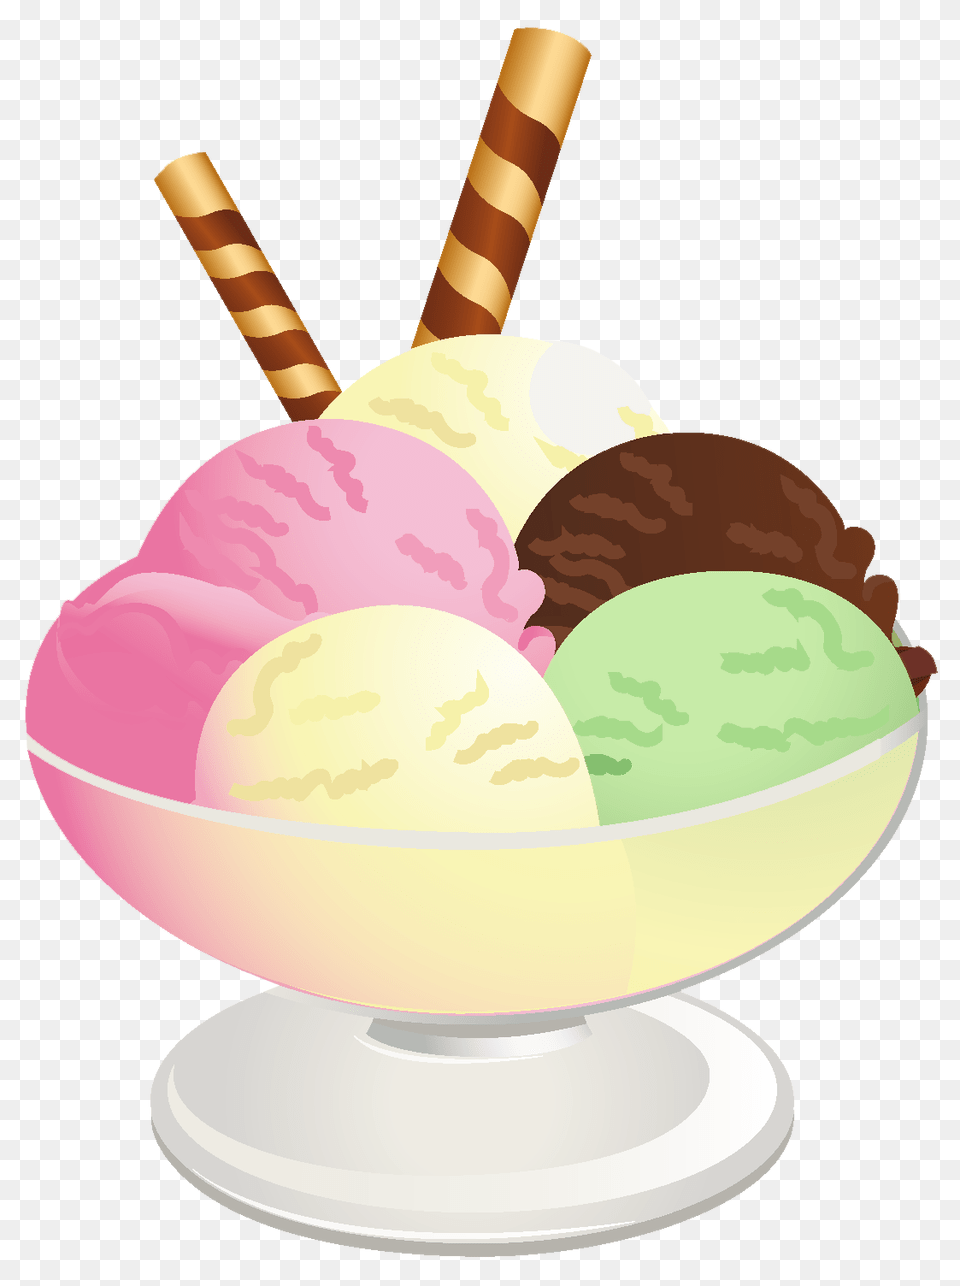 Ice Cream Sundae Clip Art, Dessert, Food, Ice Cream Png